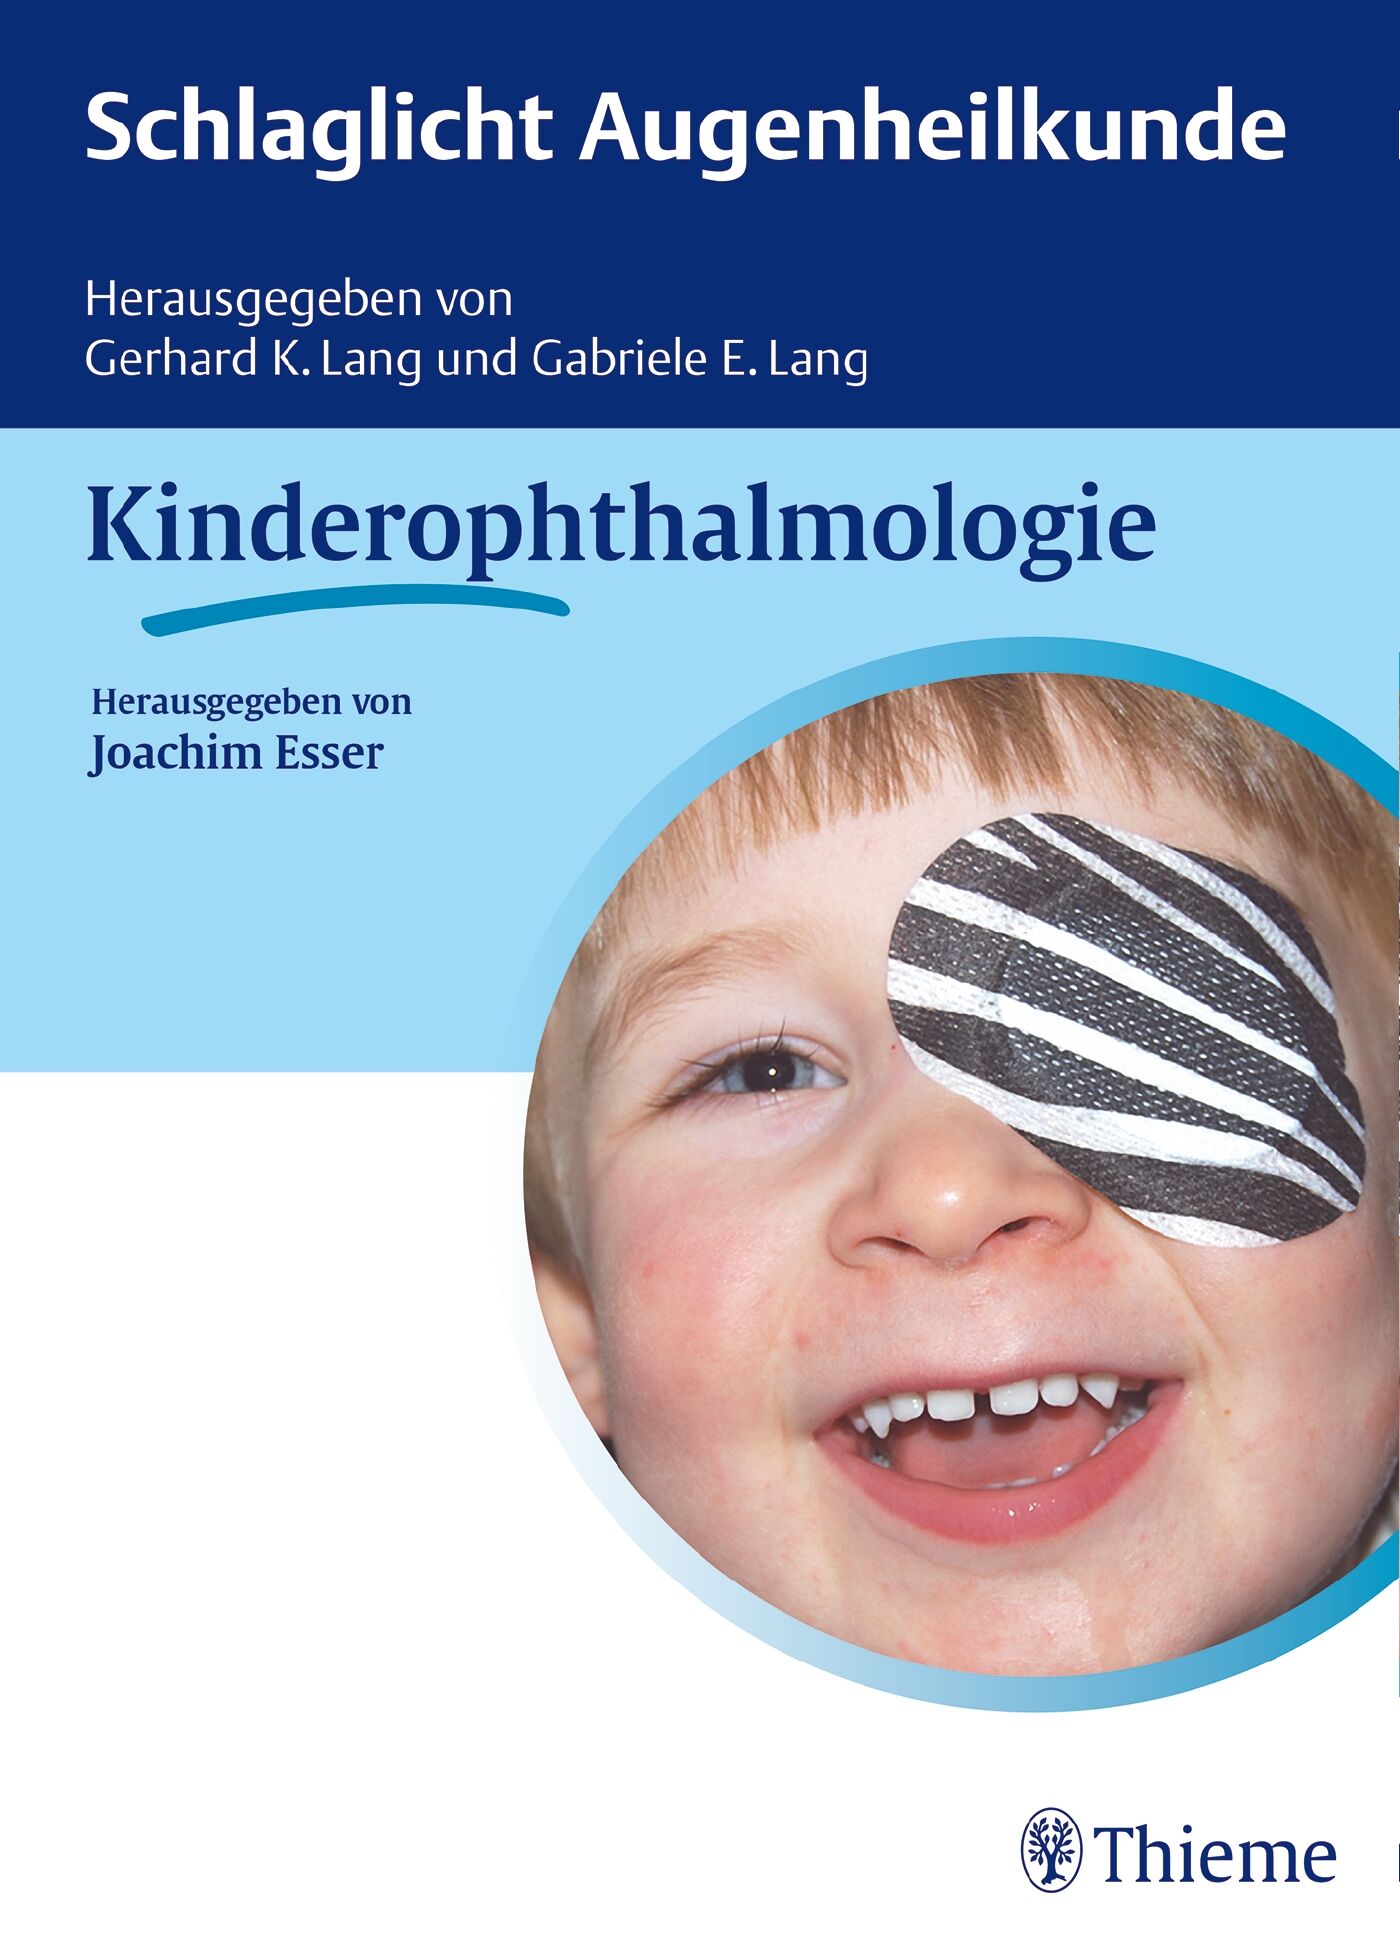 Schlaglicht Augenheilkunde: Kinderophthalmologie, 9783132030510